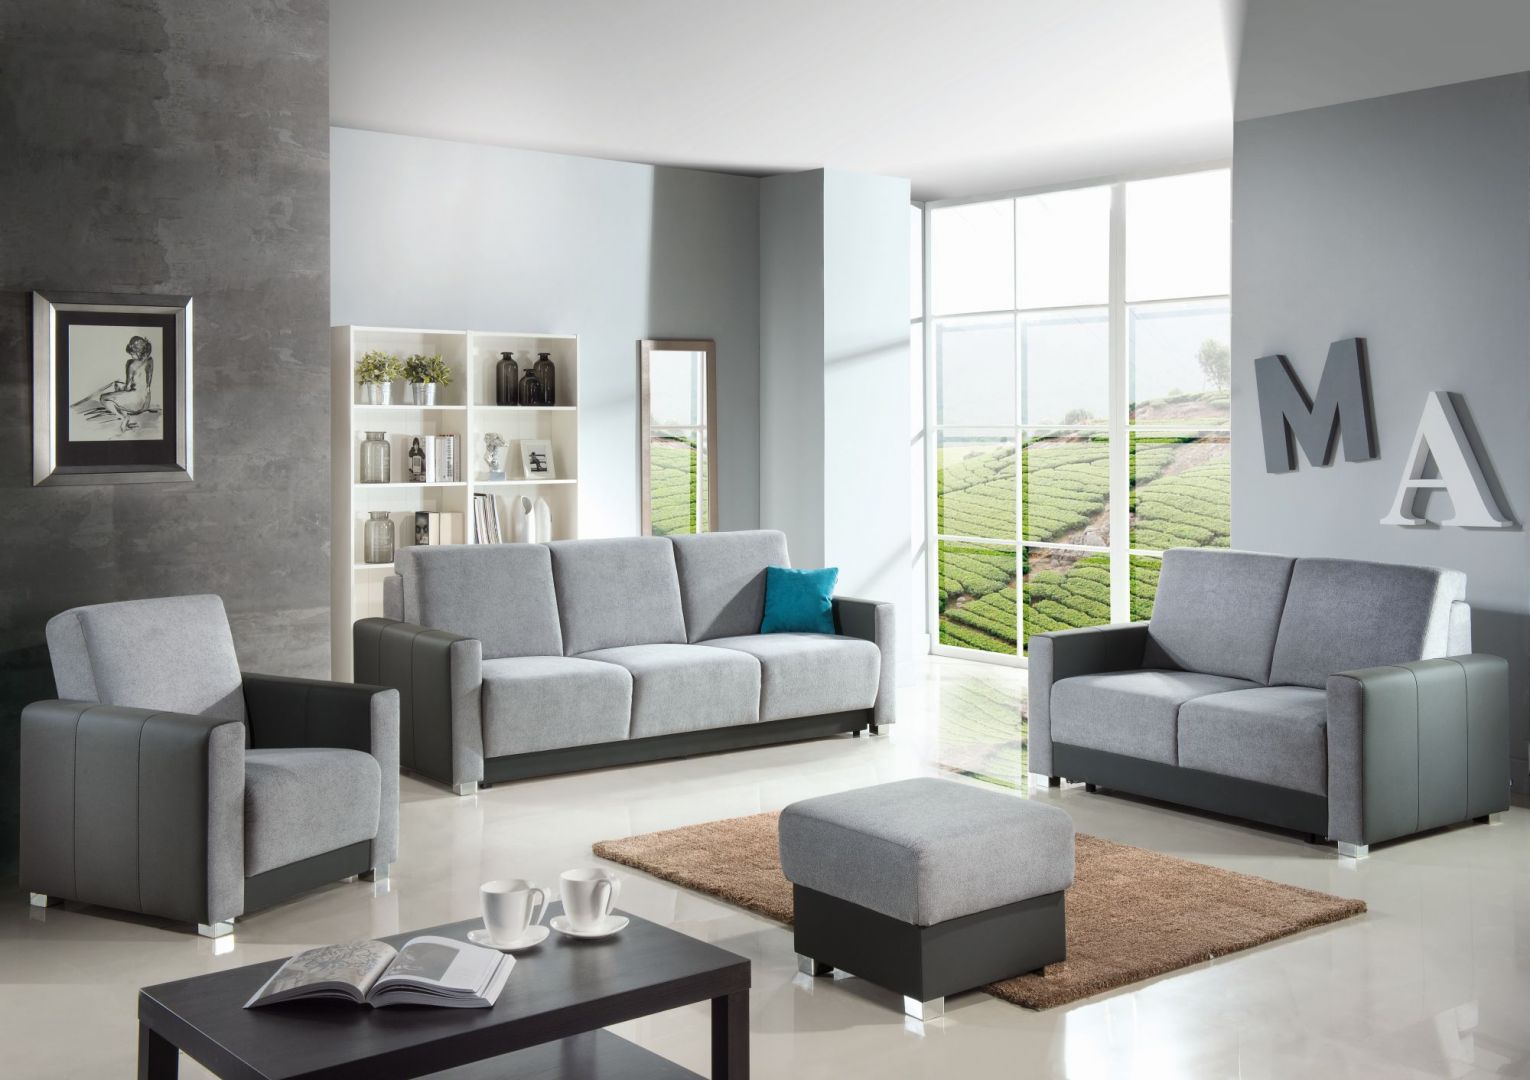 Zestaw Deli to kompleksowe wyposażenie salonu. W ramach kolekcji dostępna jest sofa, fotele i puf.  Fot. PMW 